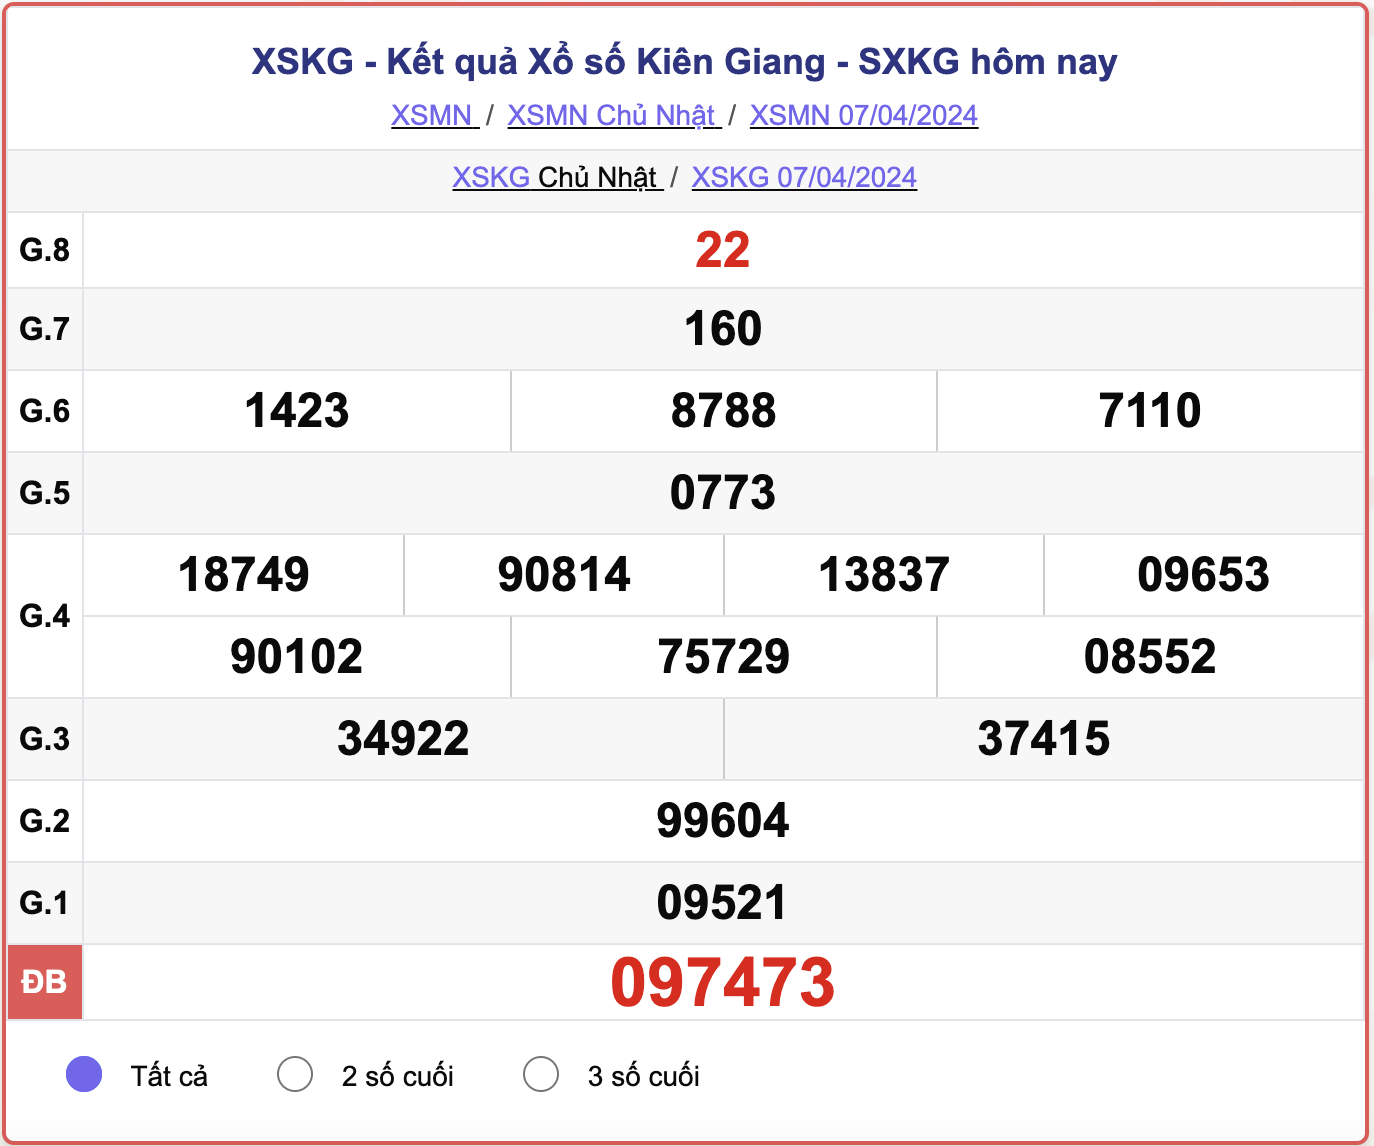 XSKG Chủ nhật, kết quả xổ số Kiên Giang ngày 7/4/2024